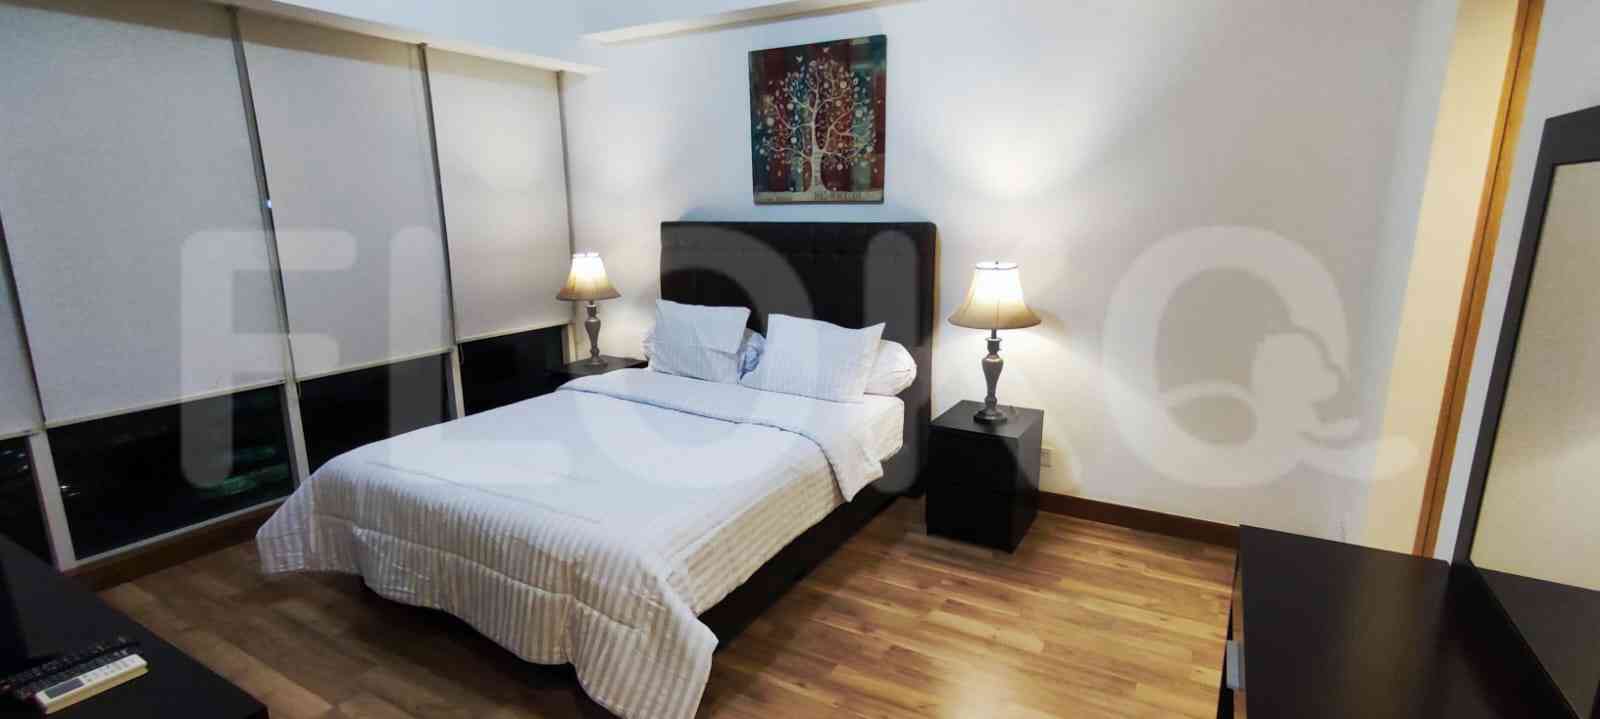 3 Bedroom on 26th Floor for Rent in Sky Garden - fse75a 3